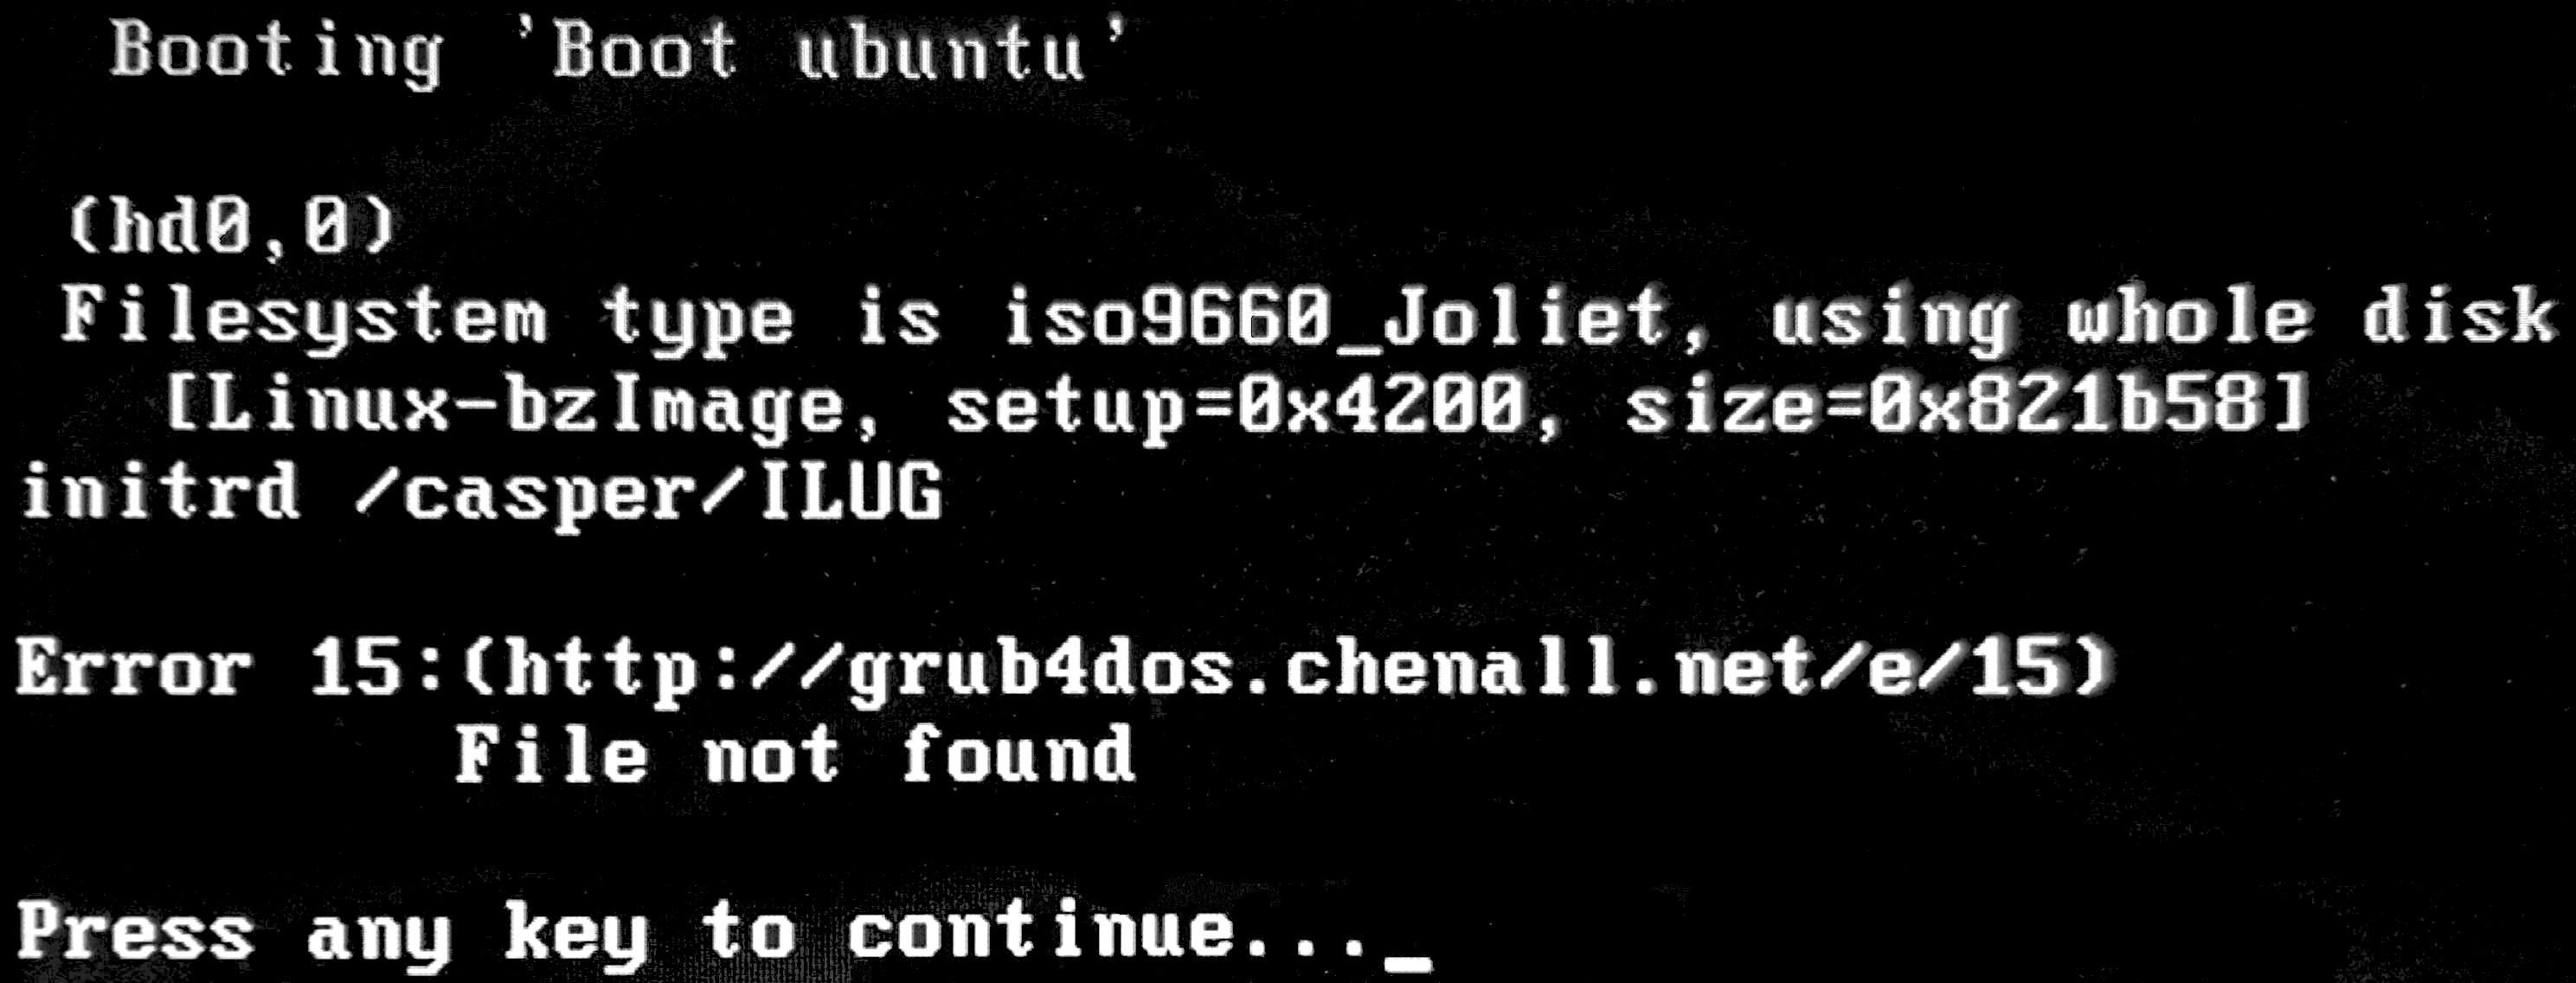 grub 10 error linux